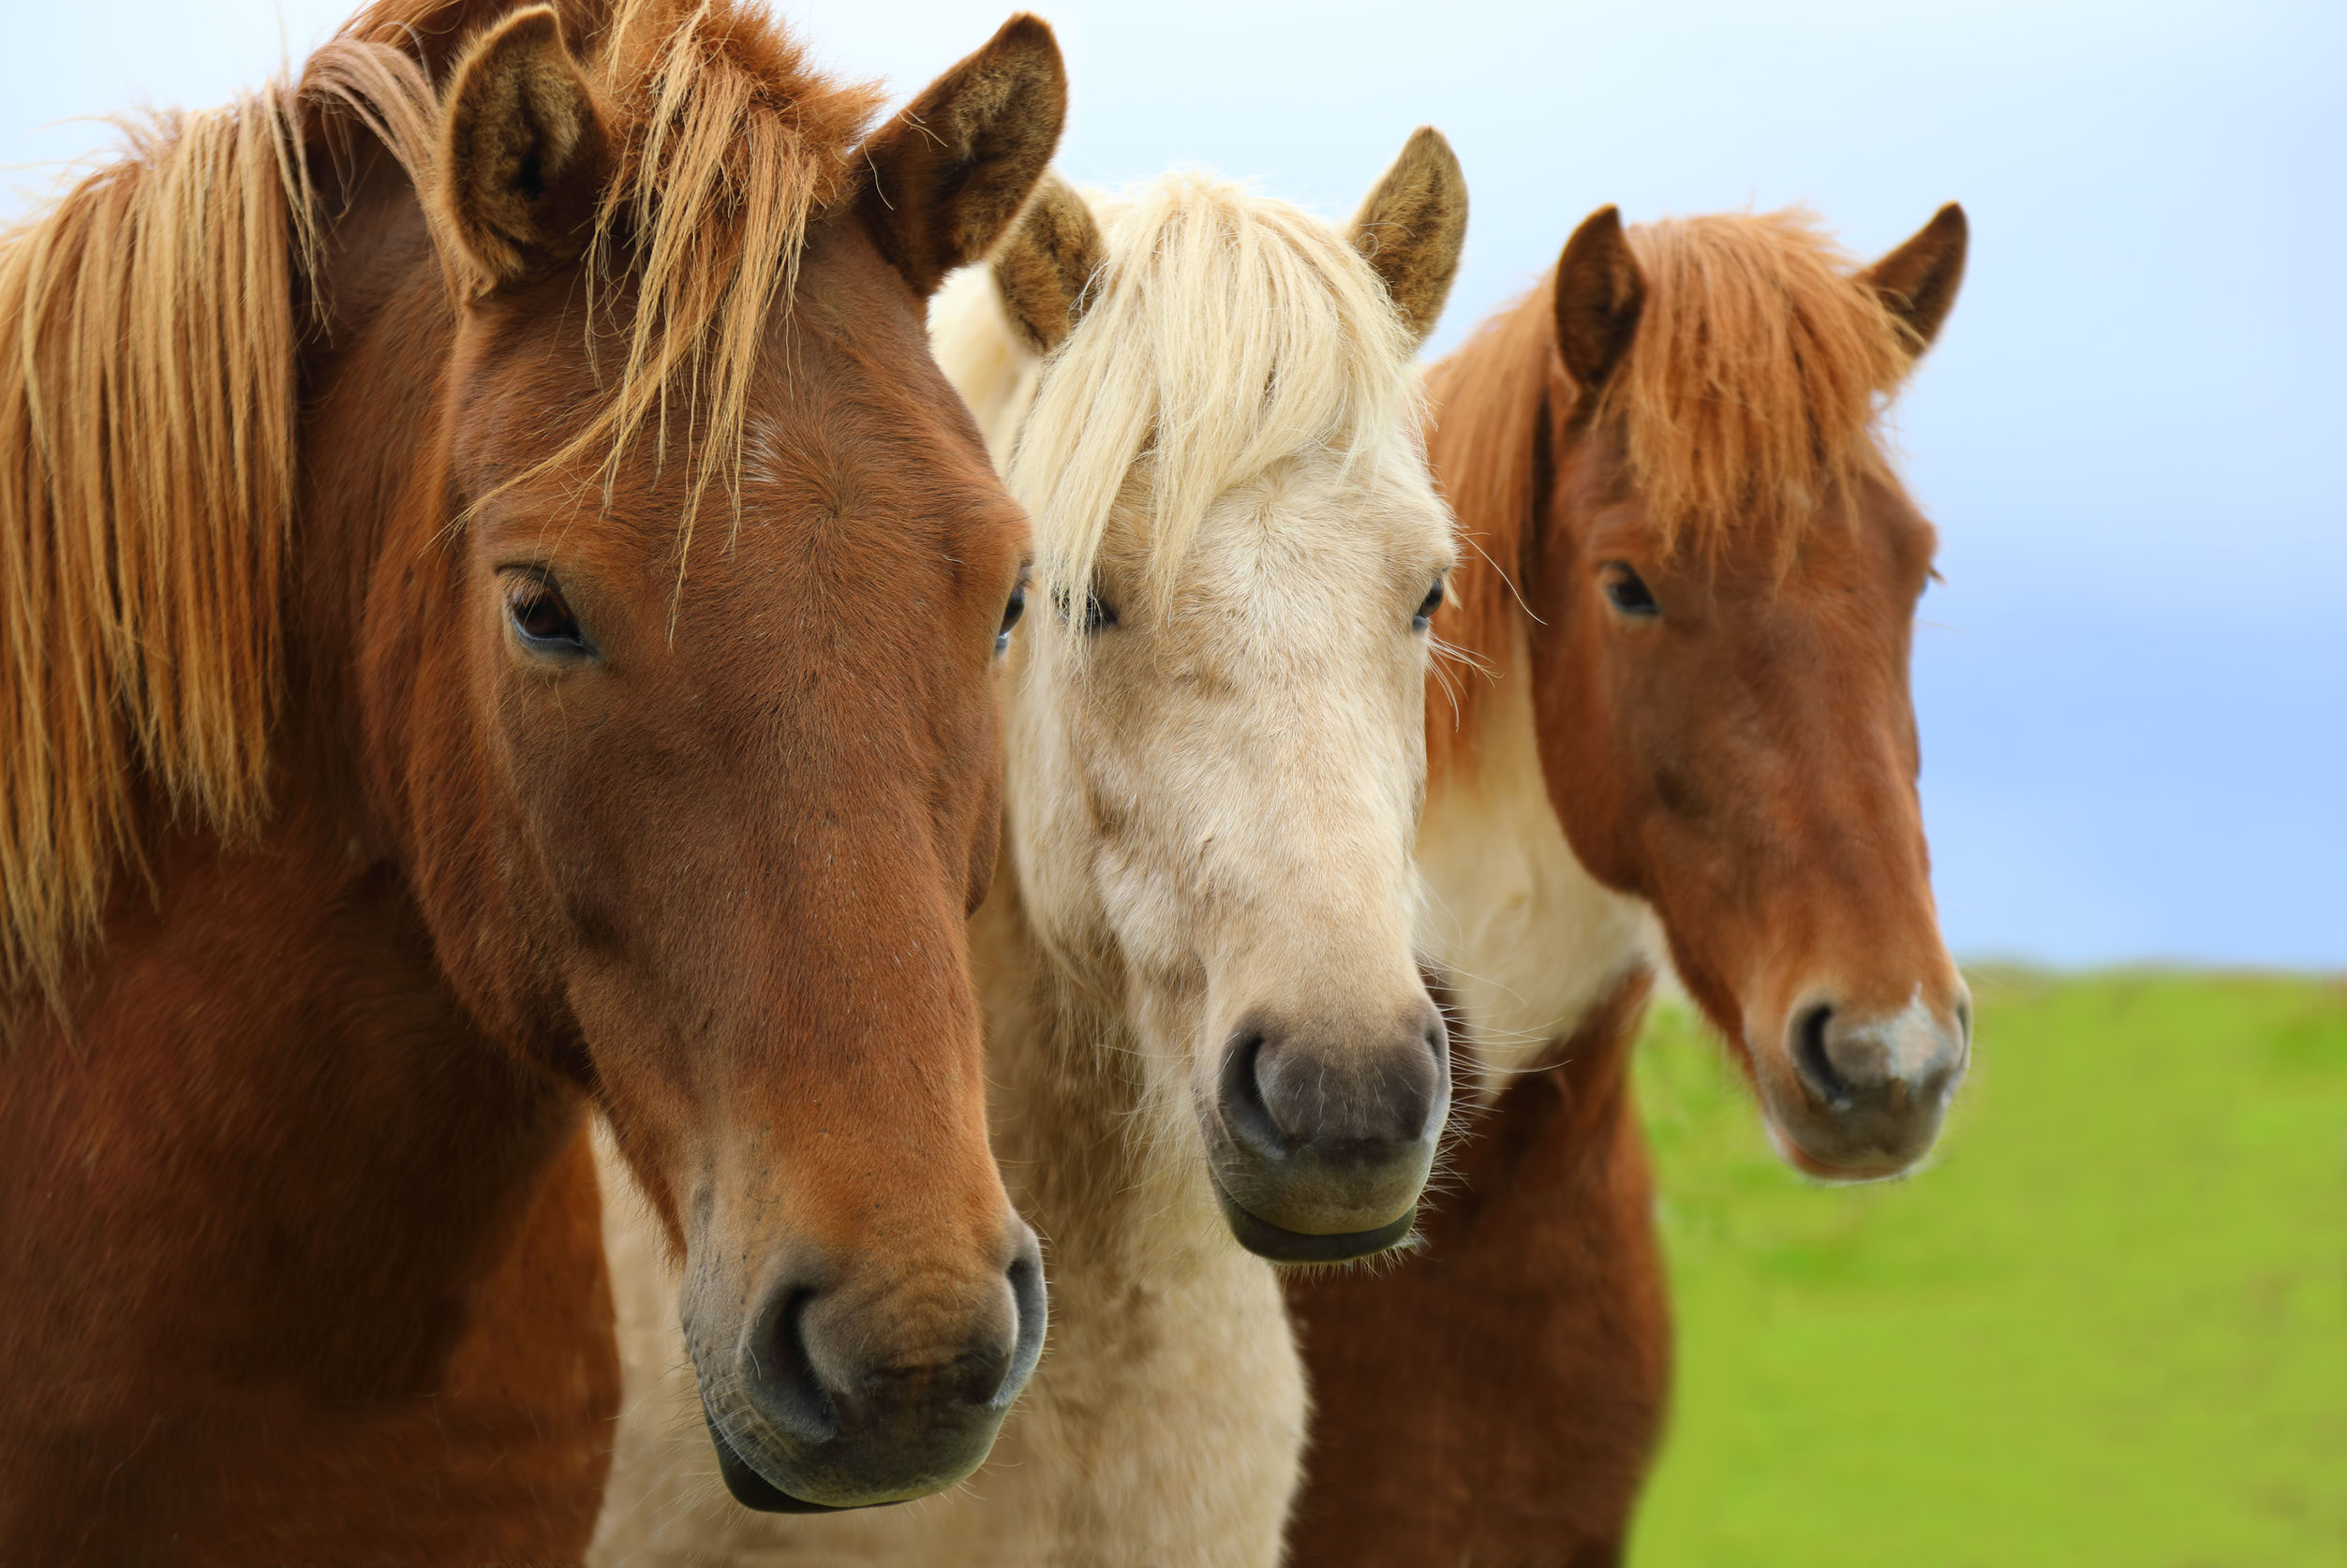 equine behaviour affiliation horses